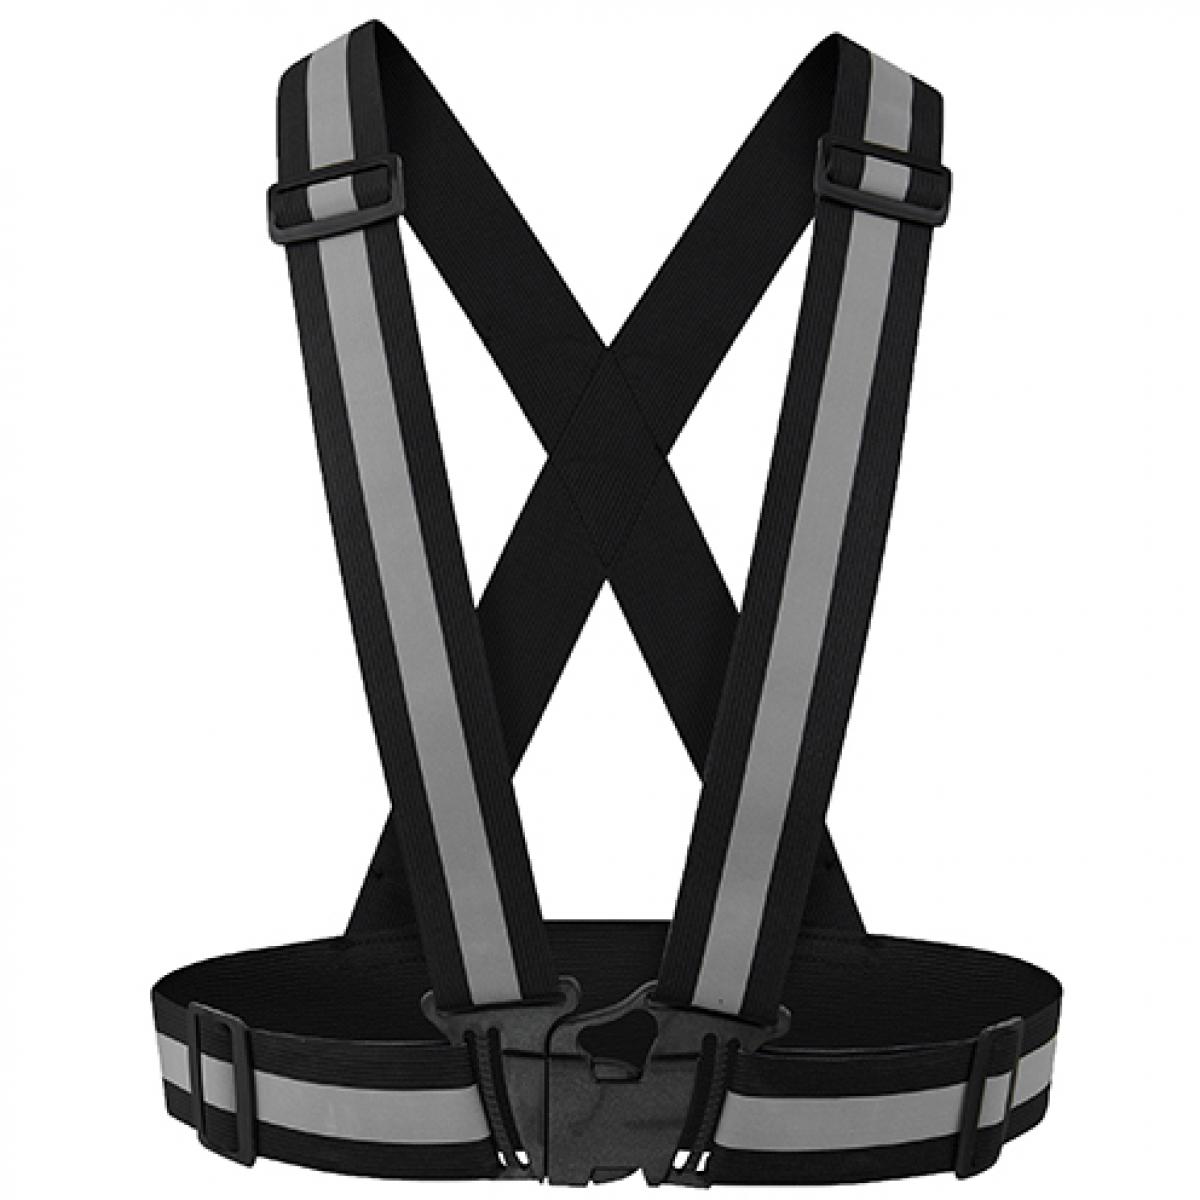 Hersteller: Korntex Herstellernummer: KXZBAND Artikelbezeichnung: Reflective Body Belt Prague Sicherheitsweste Farbe: Black